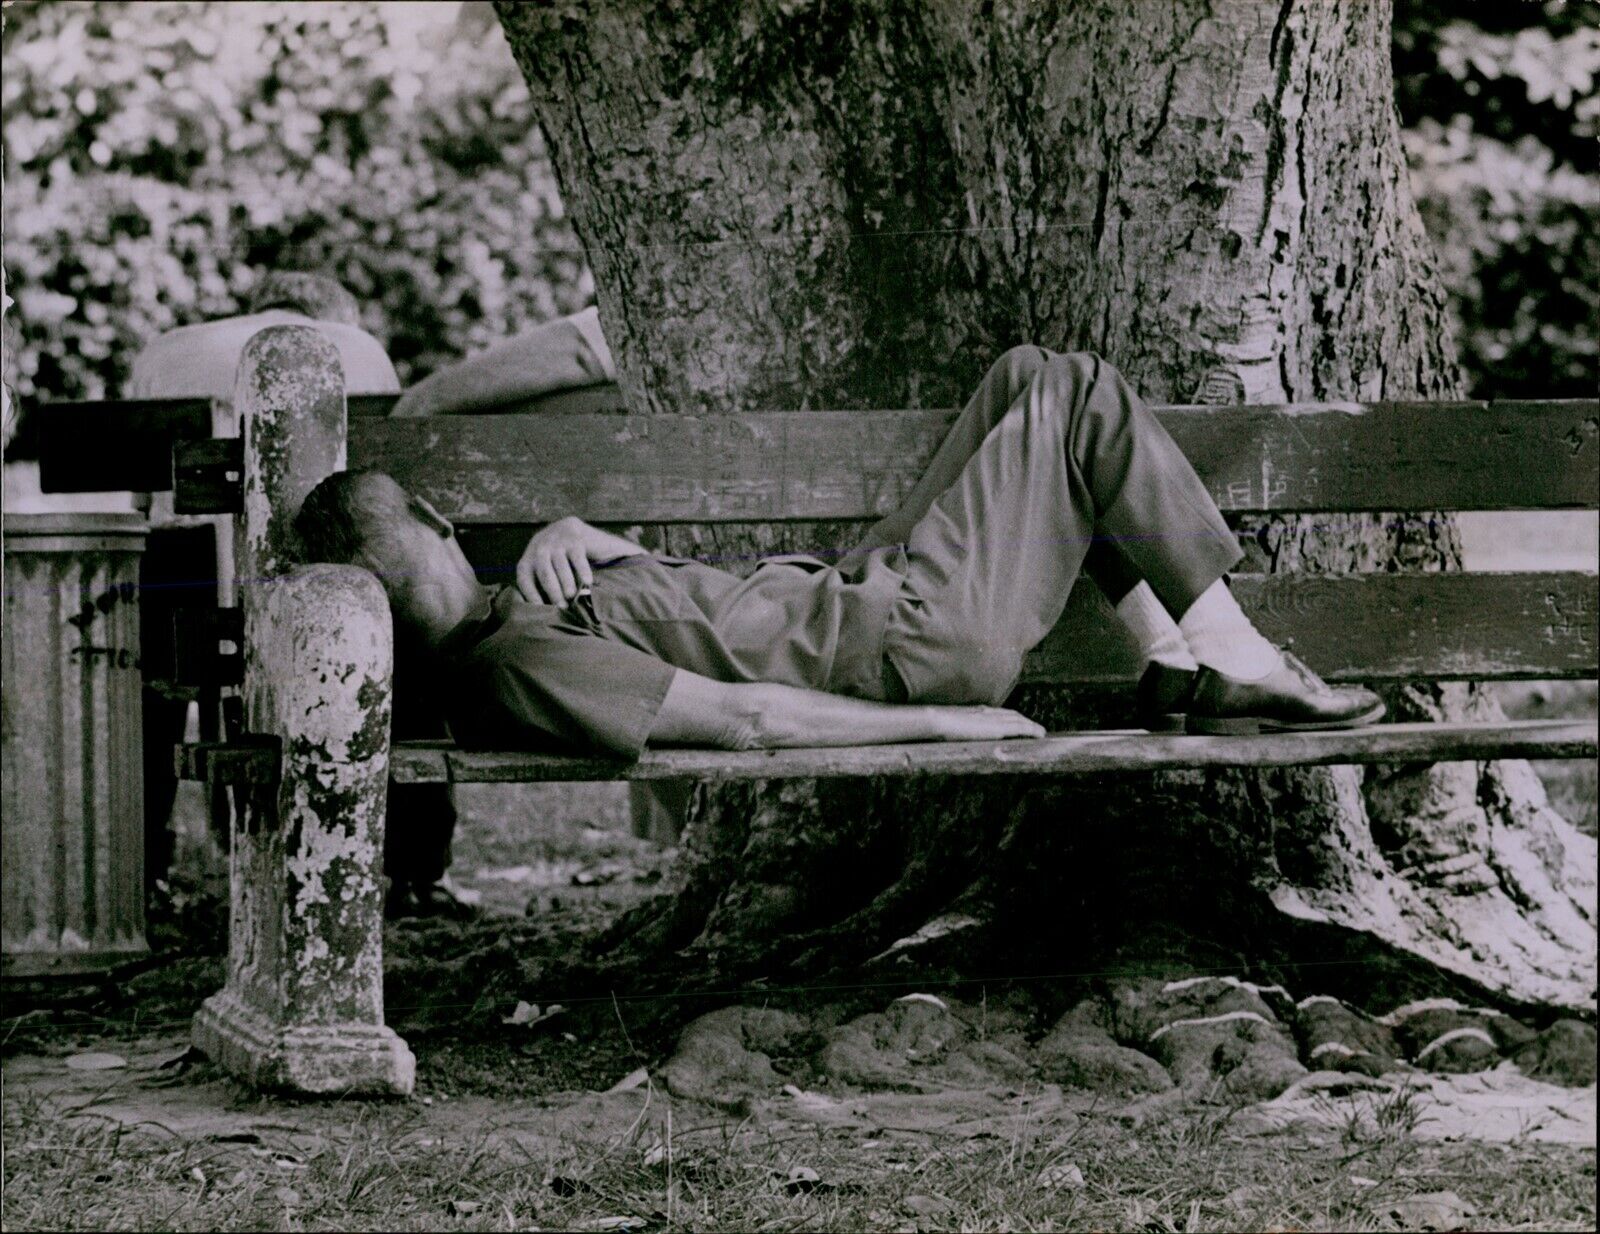 LG791 1972 Original Albert Coya Photo MAN SLEEPING ON BENCH Bayfront Park Miami